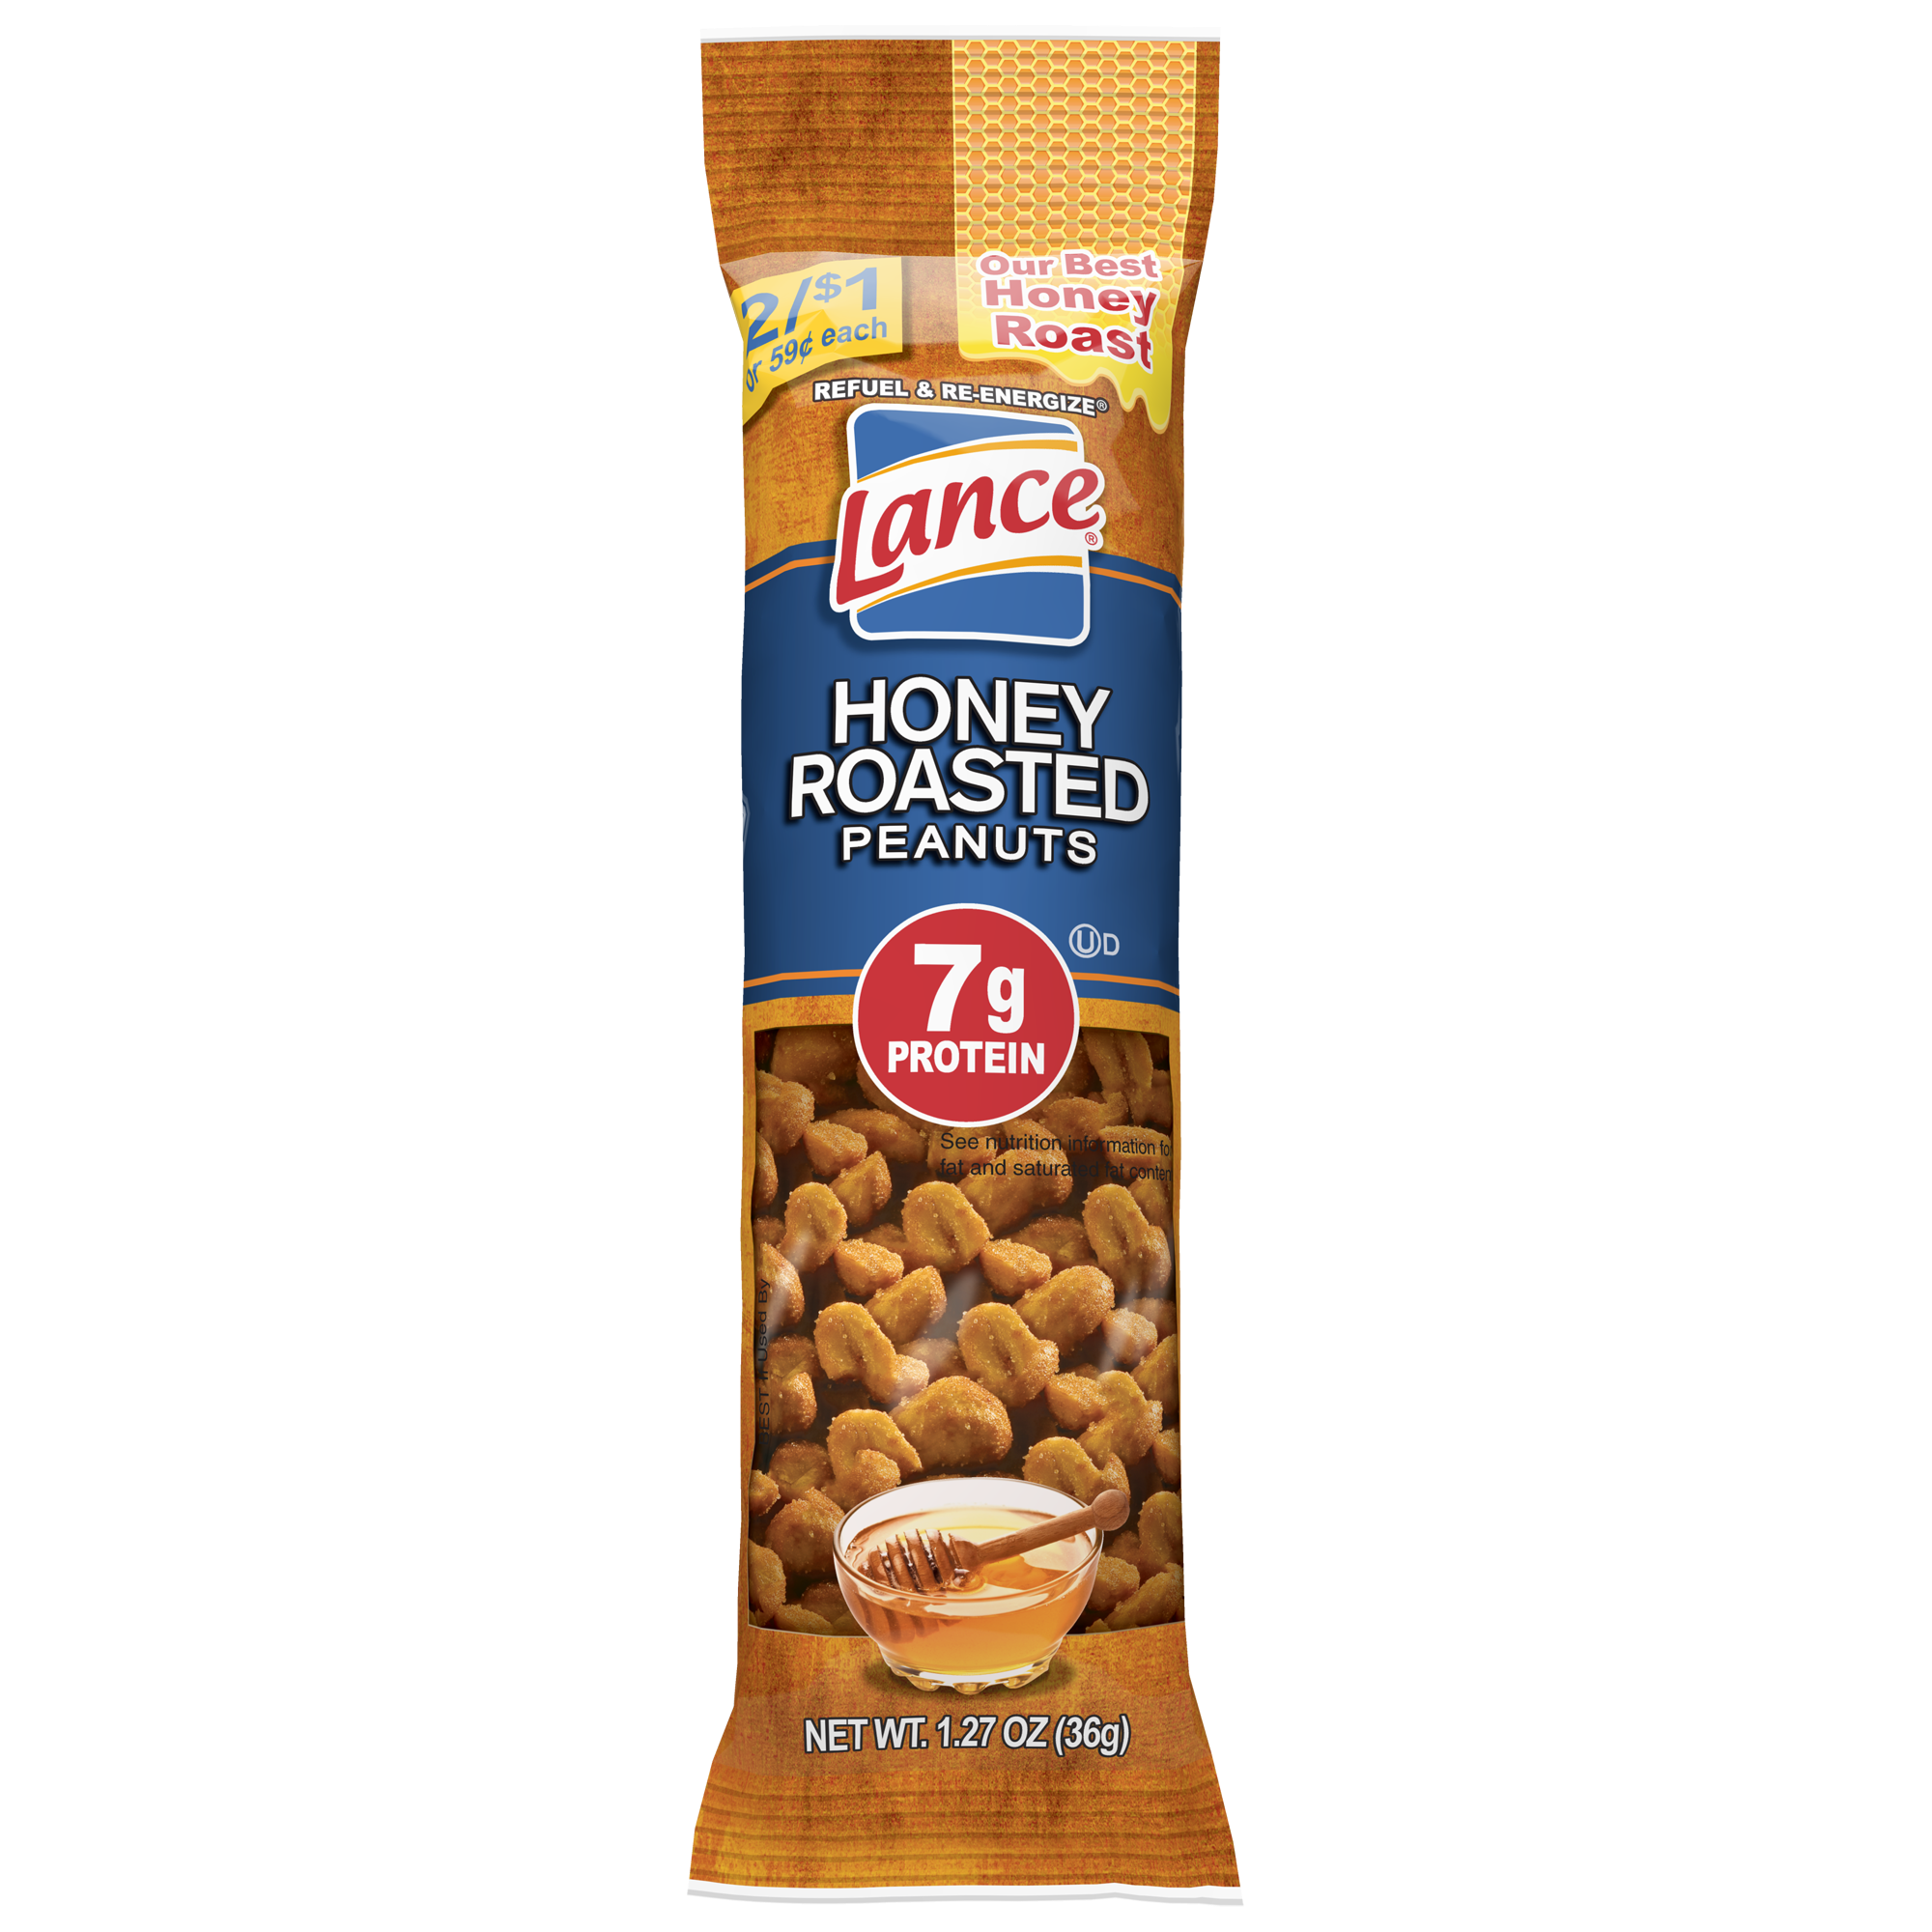 Honey Roasted Peanuts - Lance